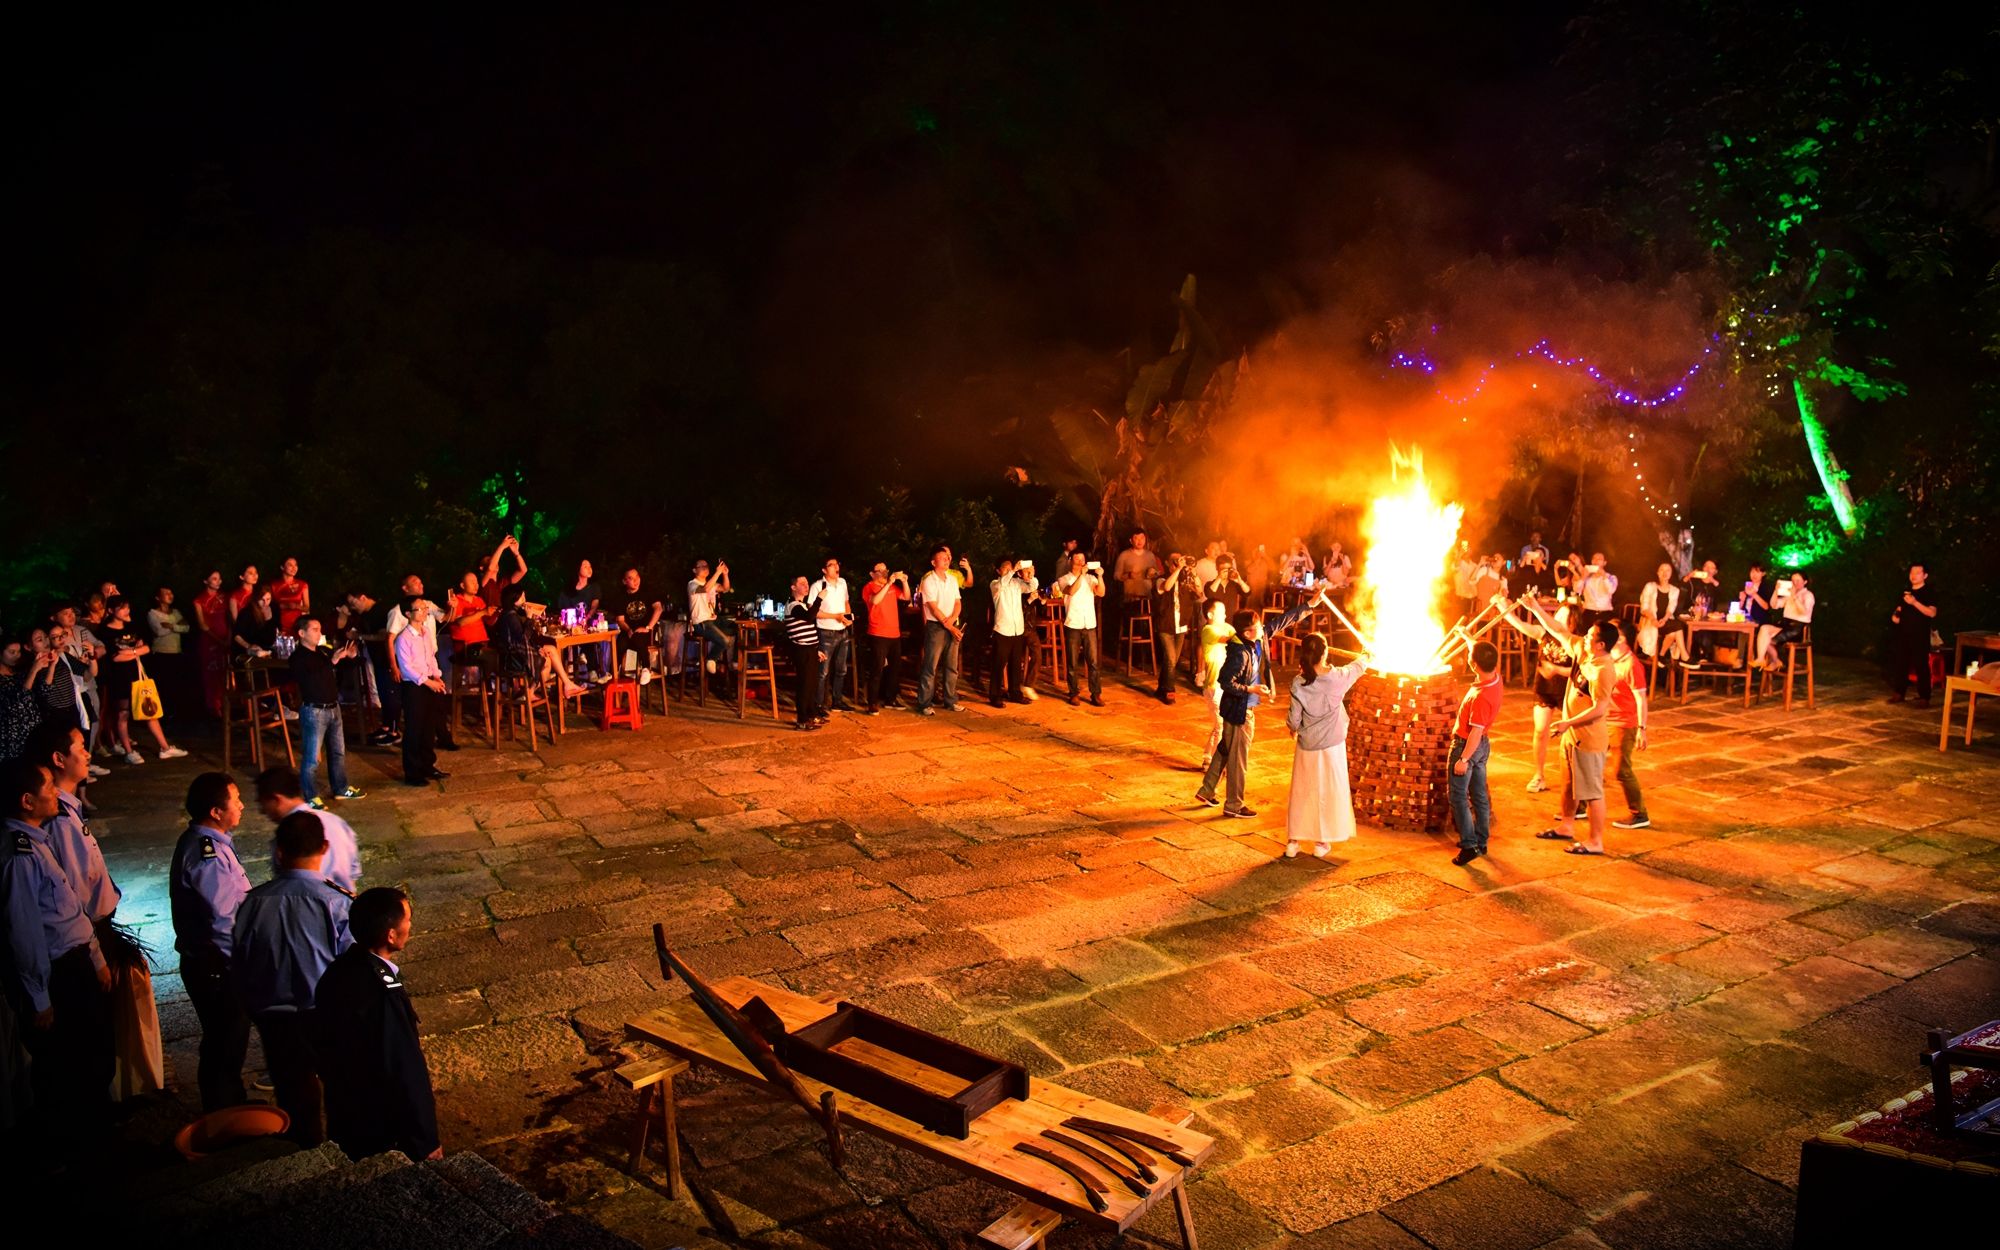 天黑之后,在塔内烧起火,大家在火堆旁唱歌,跳舞,举办一场篝火晚会